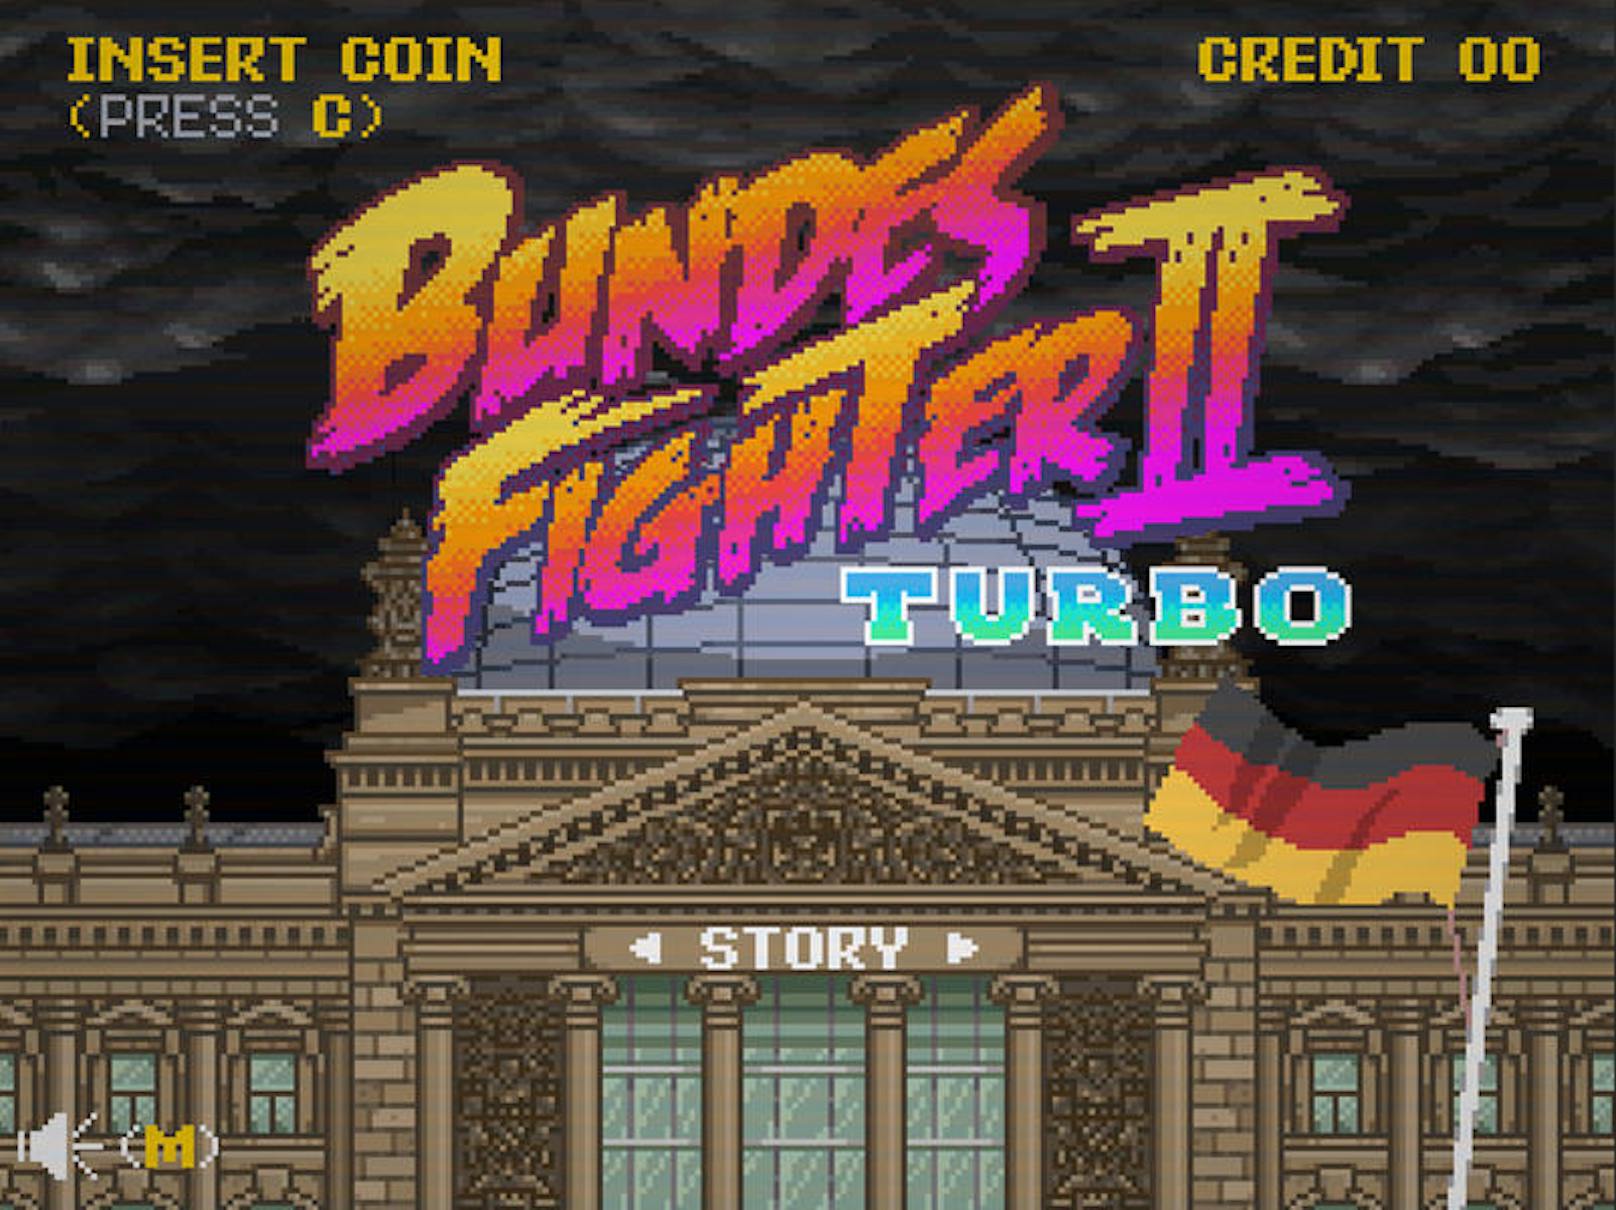 Herzlich willkommen beim "Bundesfighter 2 Turbo" - ein Wahlkampfgame und eine Anspielung auf das kultige Spiel "Street Fighter".